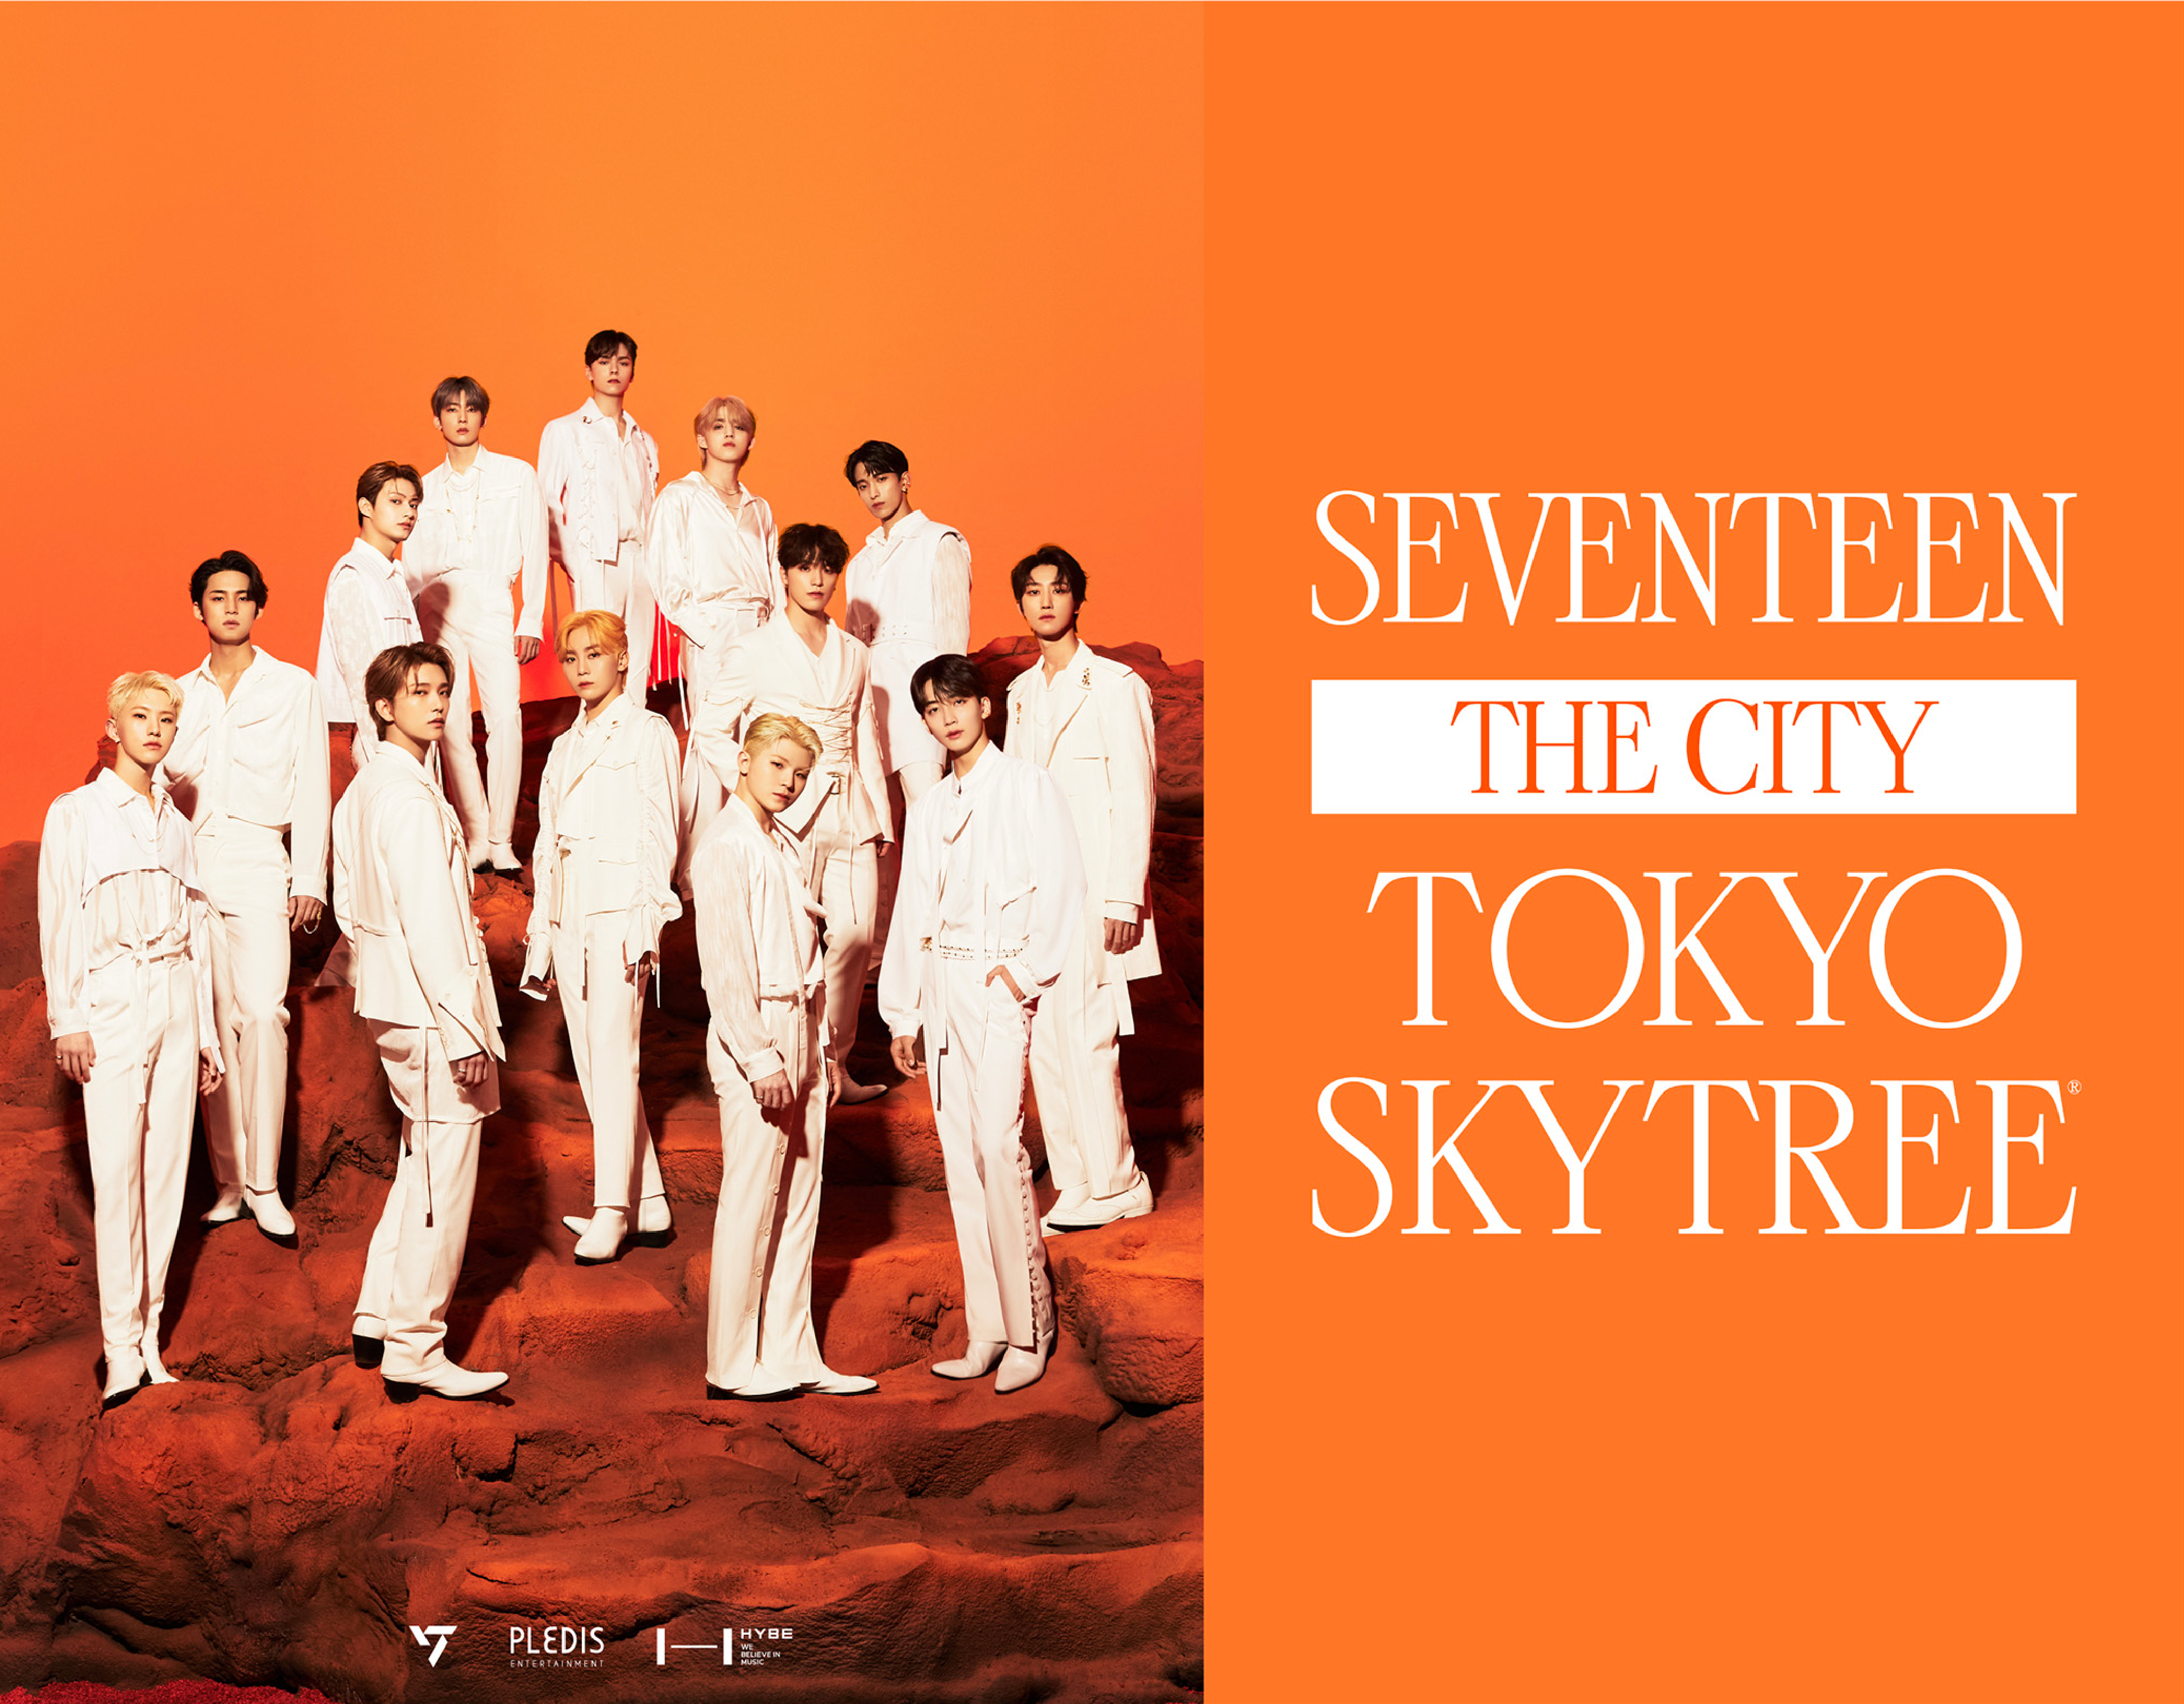 東京スカイツリー、K-POPグループ「SEVENTEEN」とコラボイベント　集客増を見込む